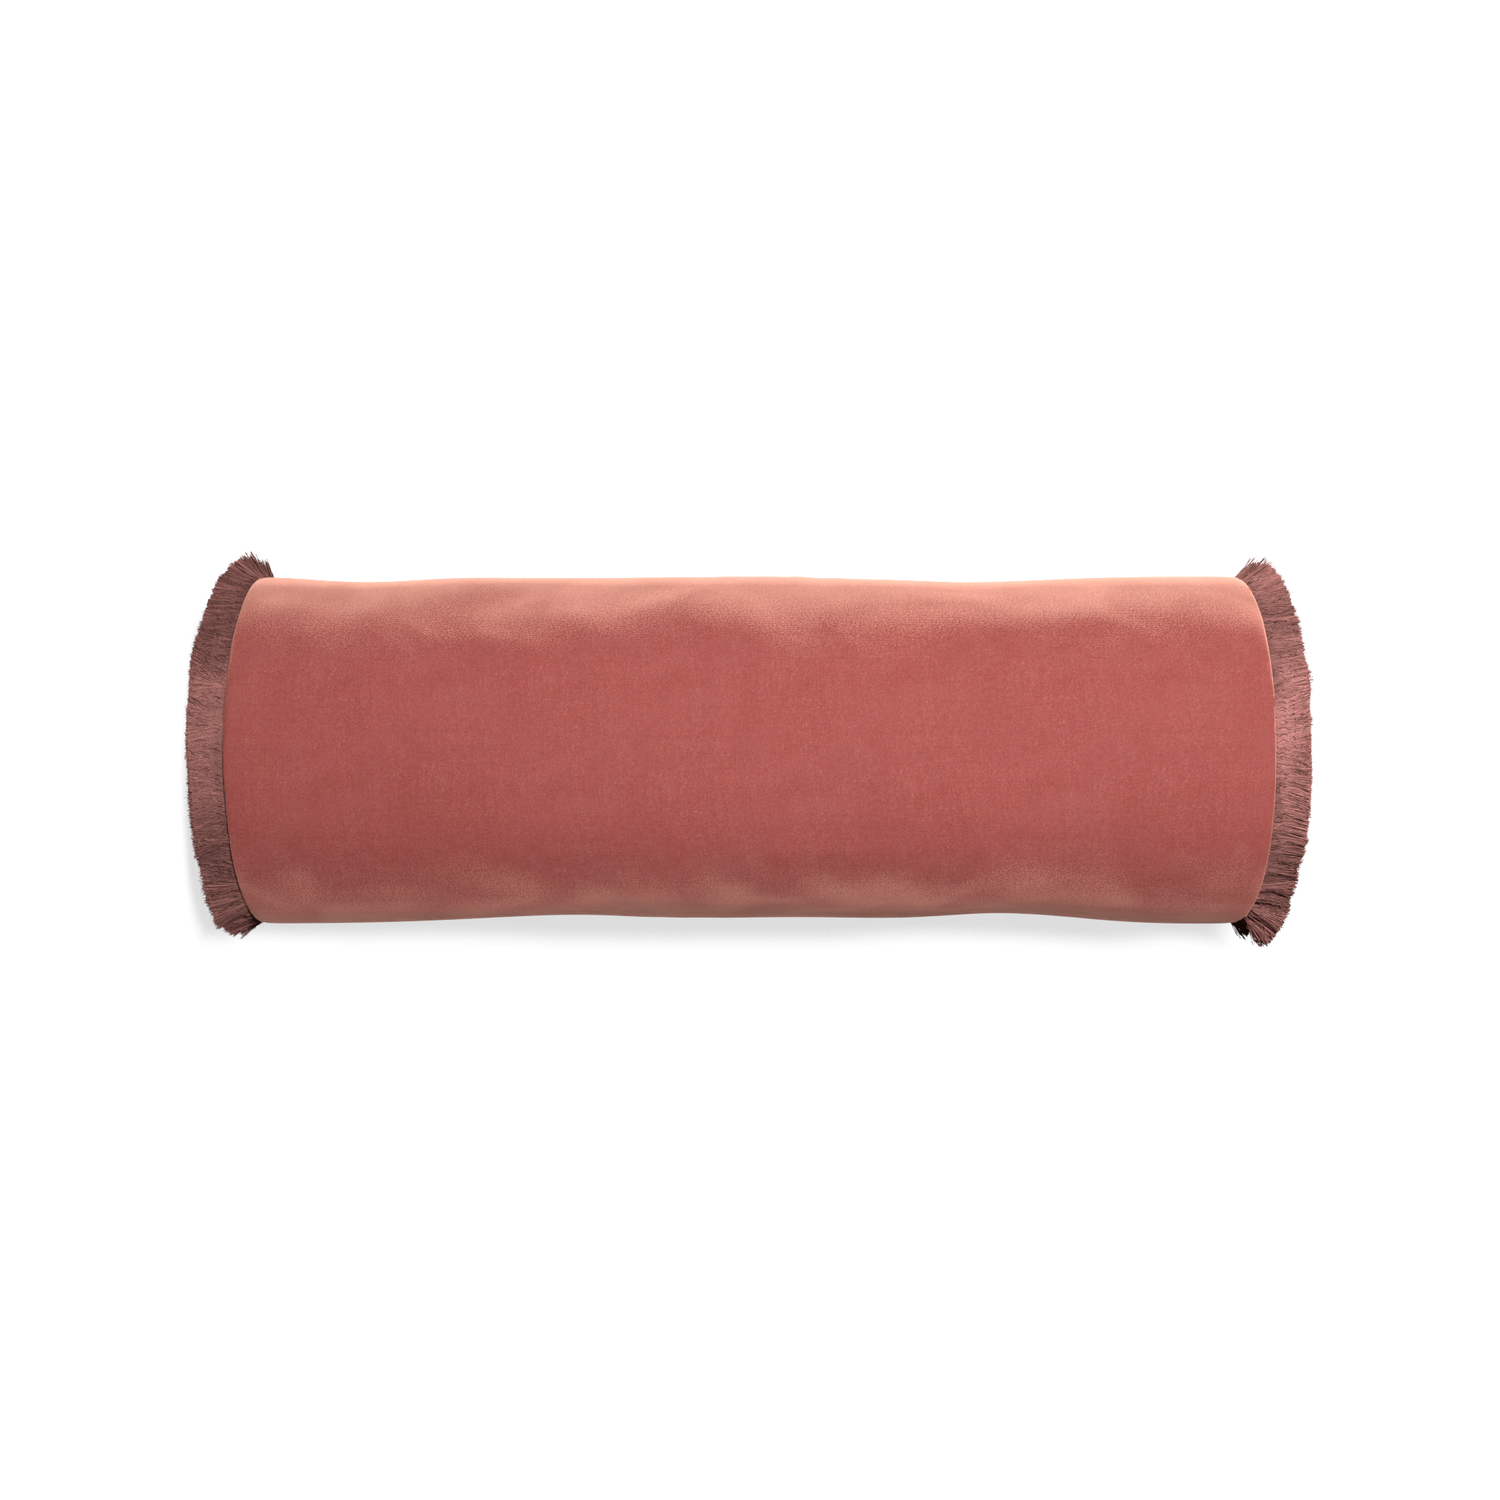 bolster coral velvet pillow with dusty rose fringe